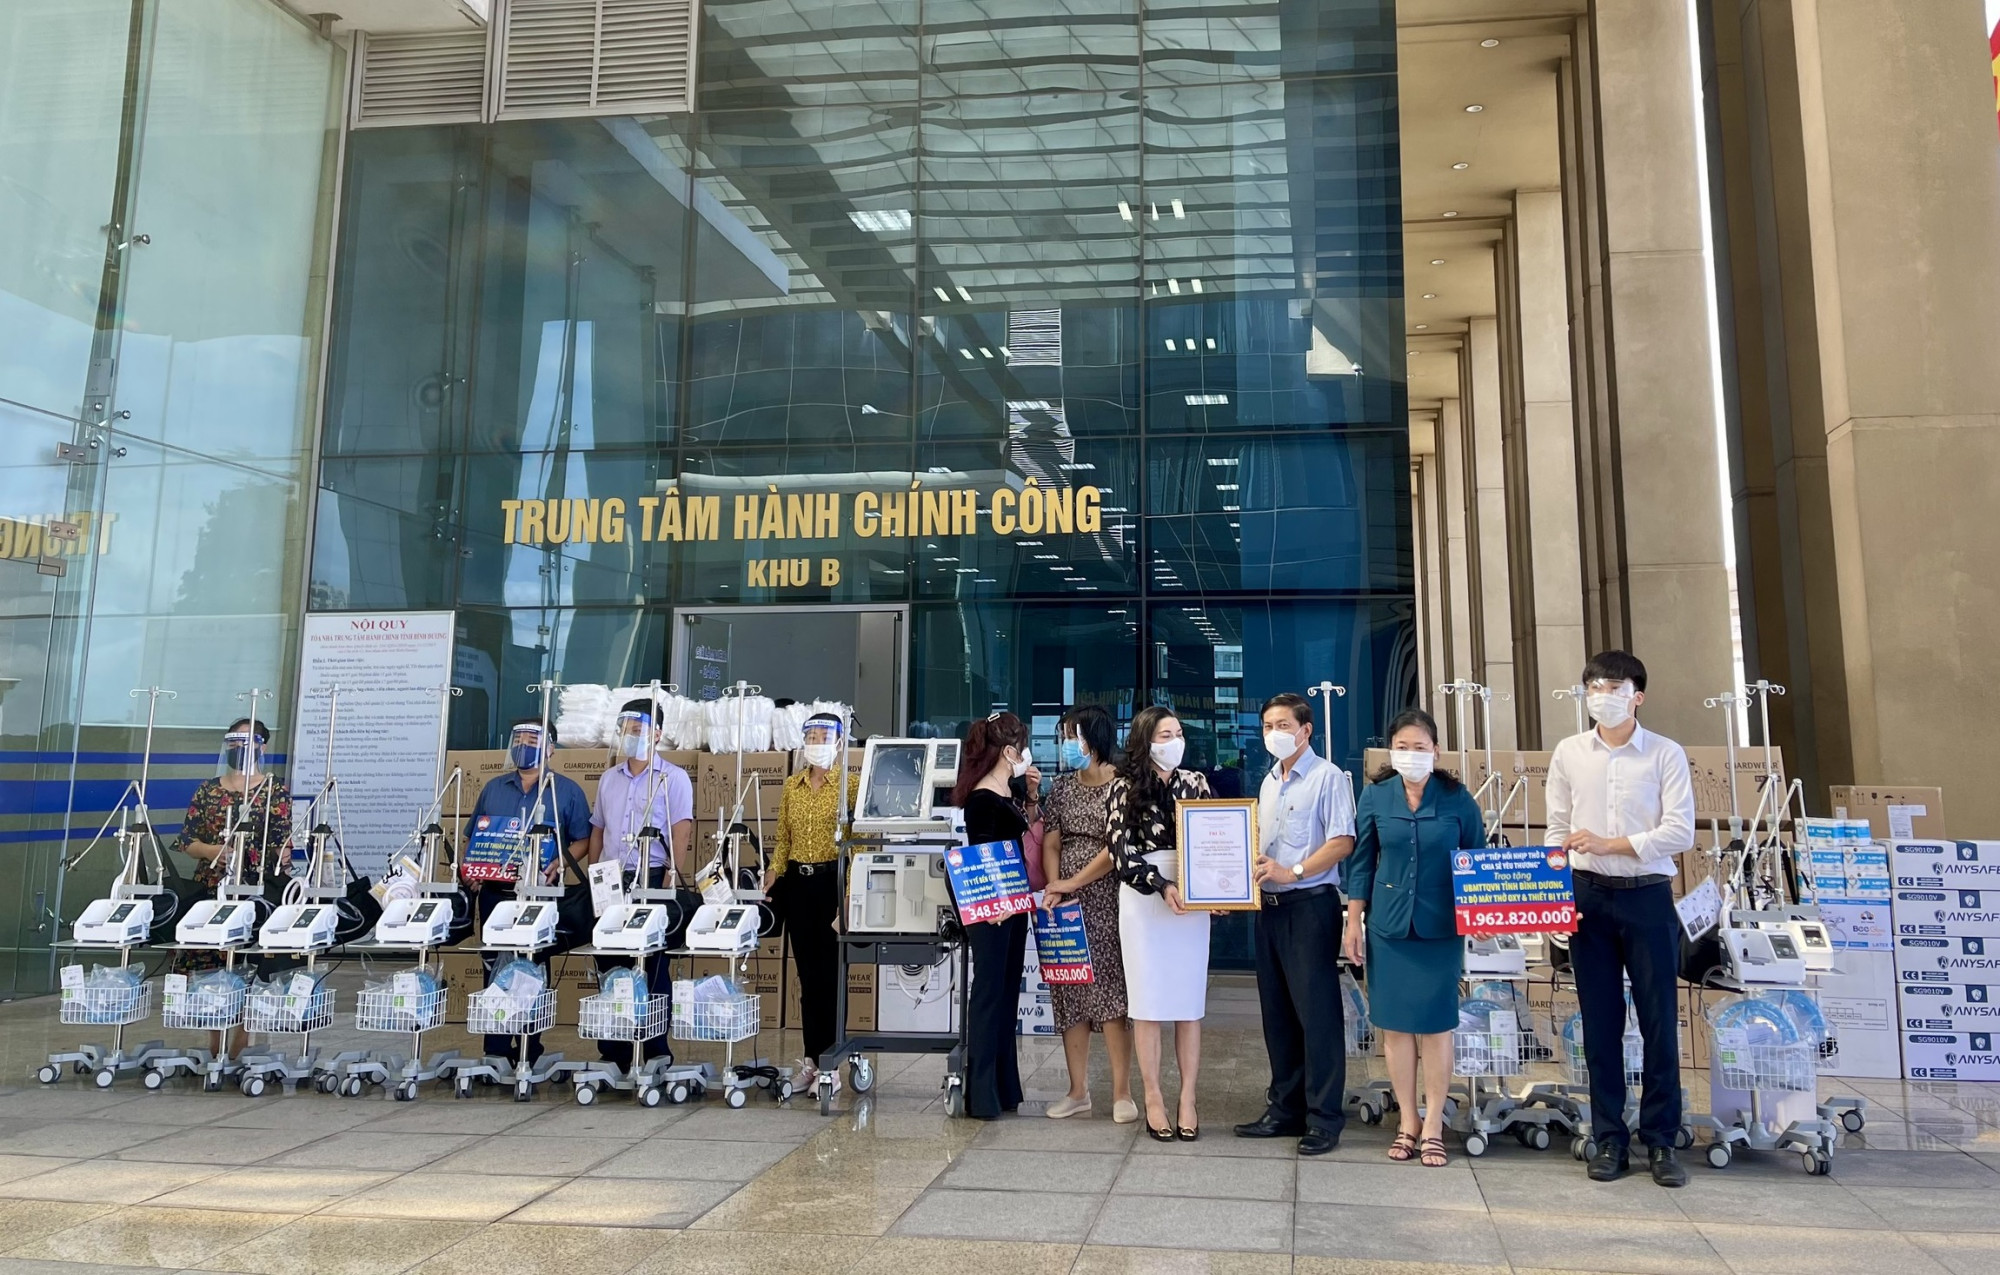 Quỹ từ thiện Kim Oanh đã ủng hộ tỉnh Bình Dưong 32 máy trợ thở với nhiều vật tư y tế có giá trị - Ảnh: Kim Oanh Group